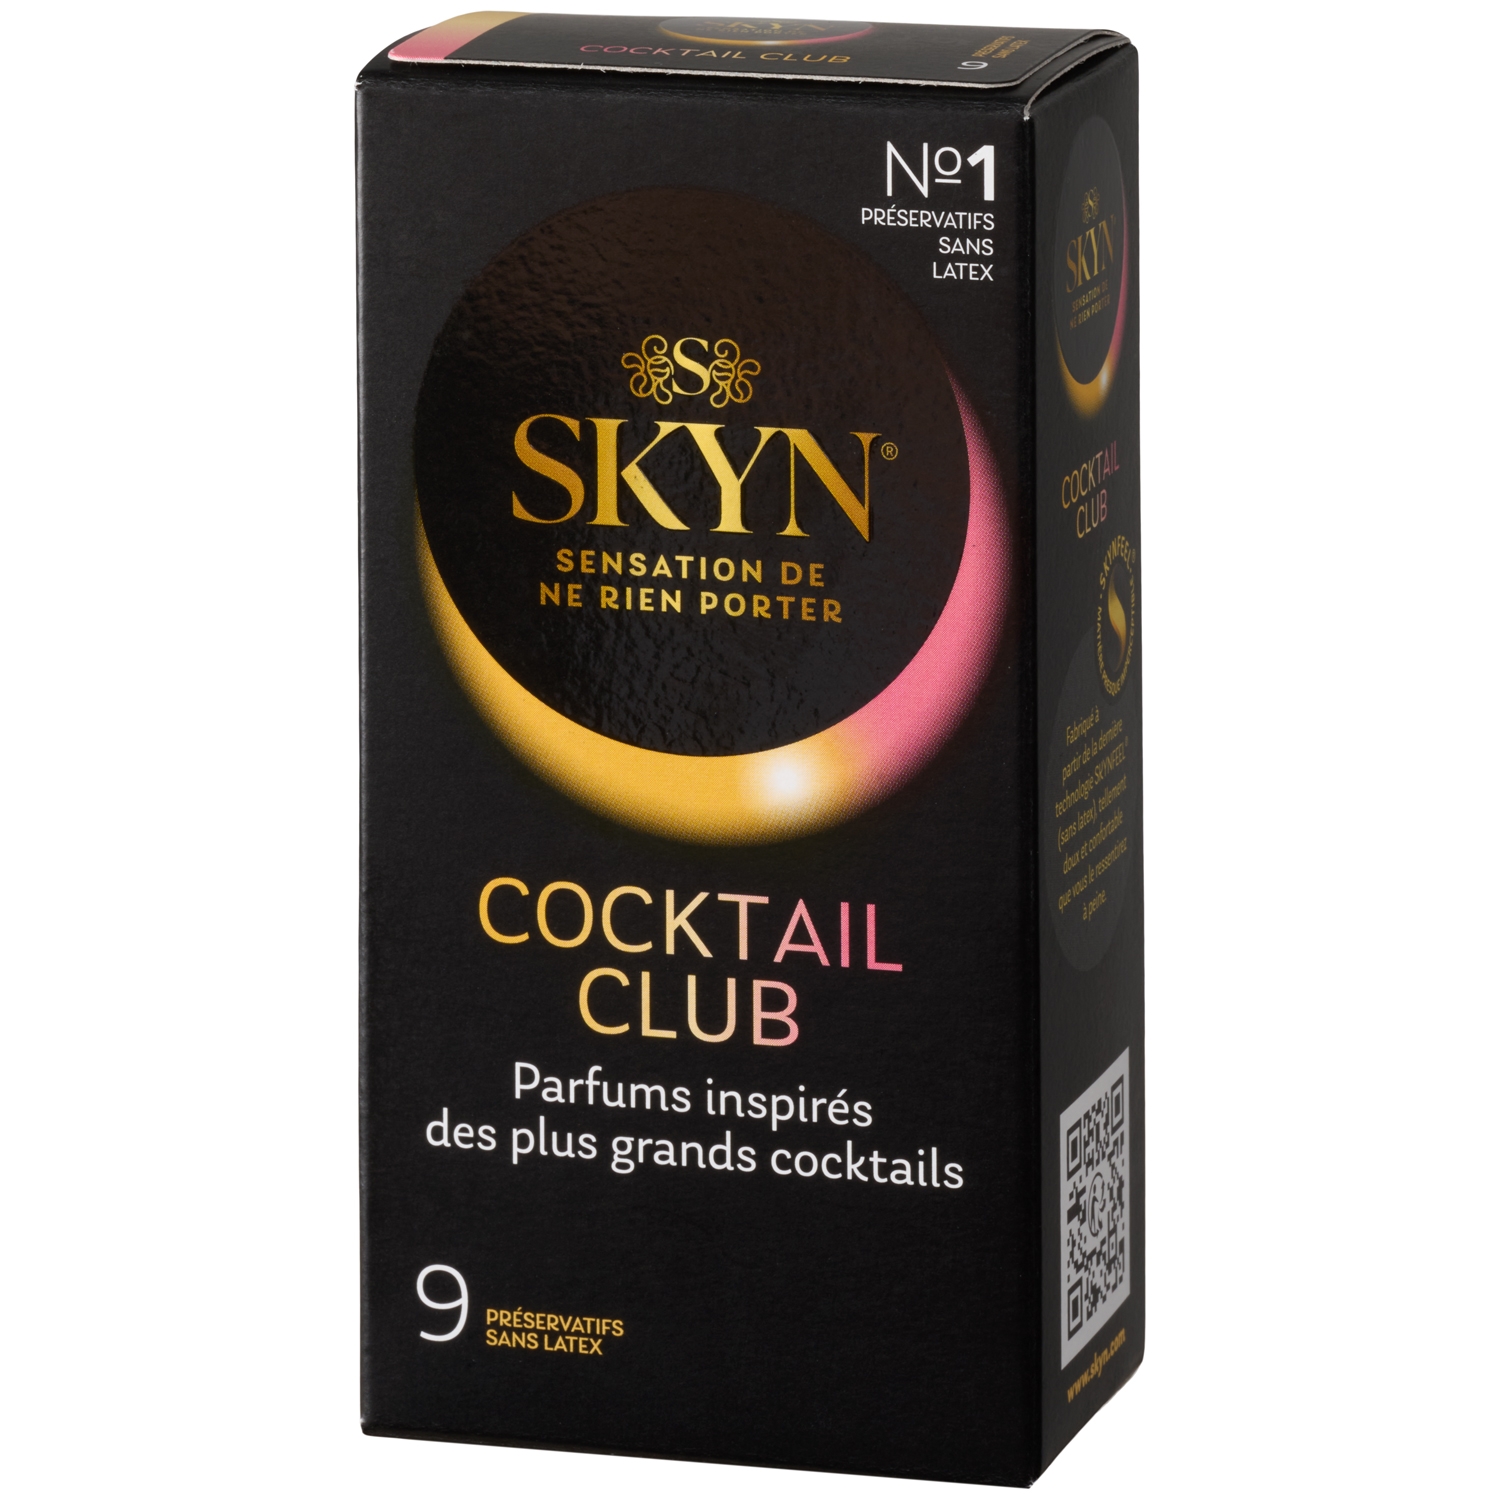 Skyn Cocktail Club Kondomer 9 stk - Klar